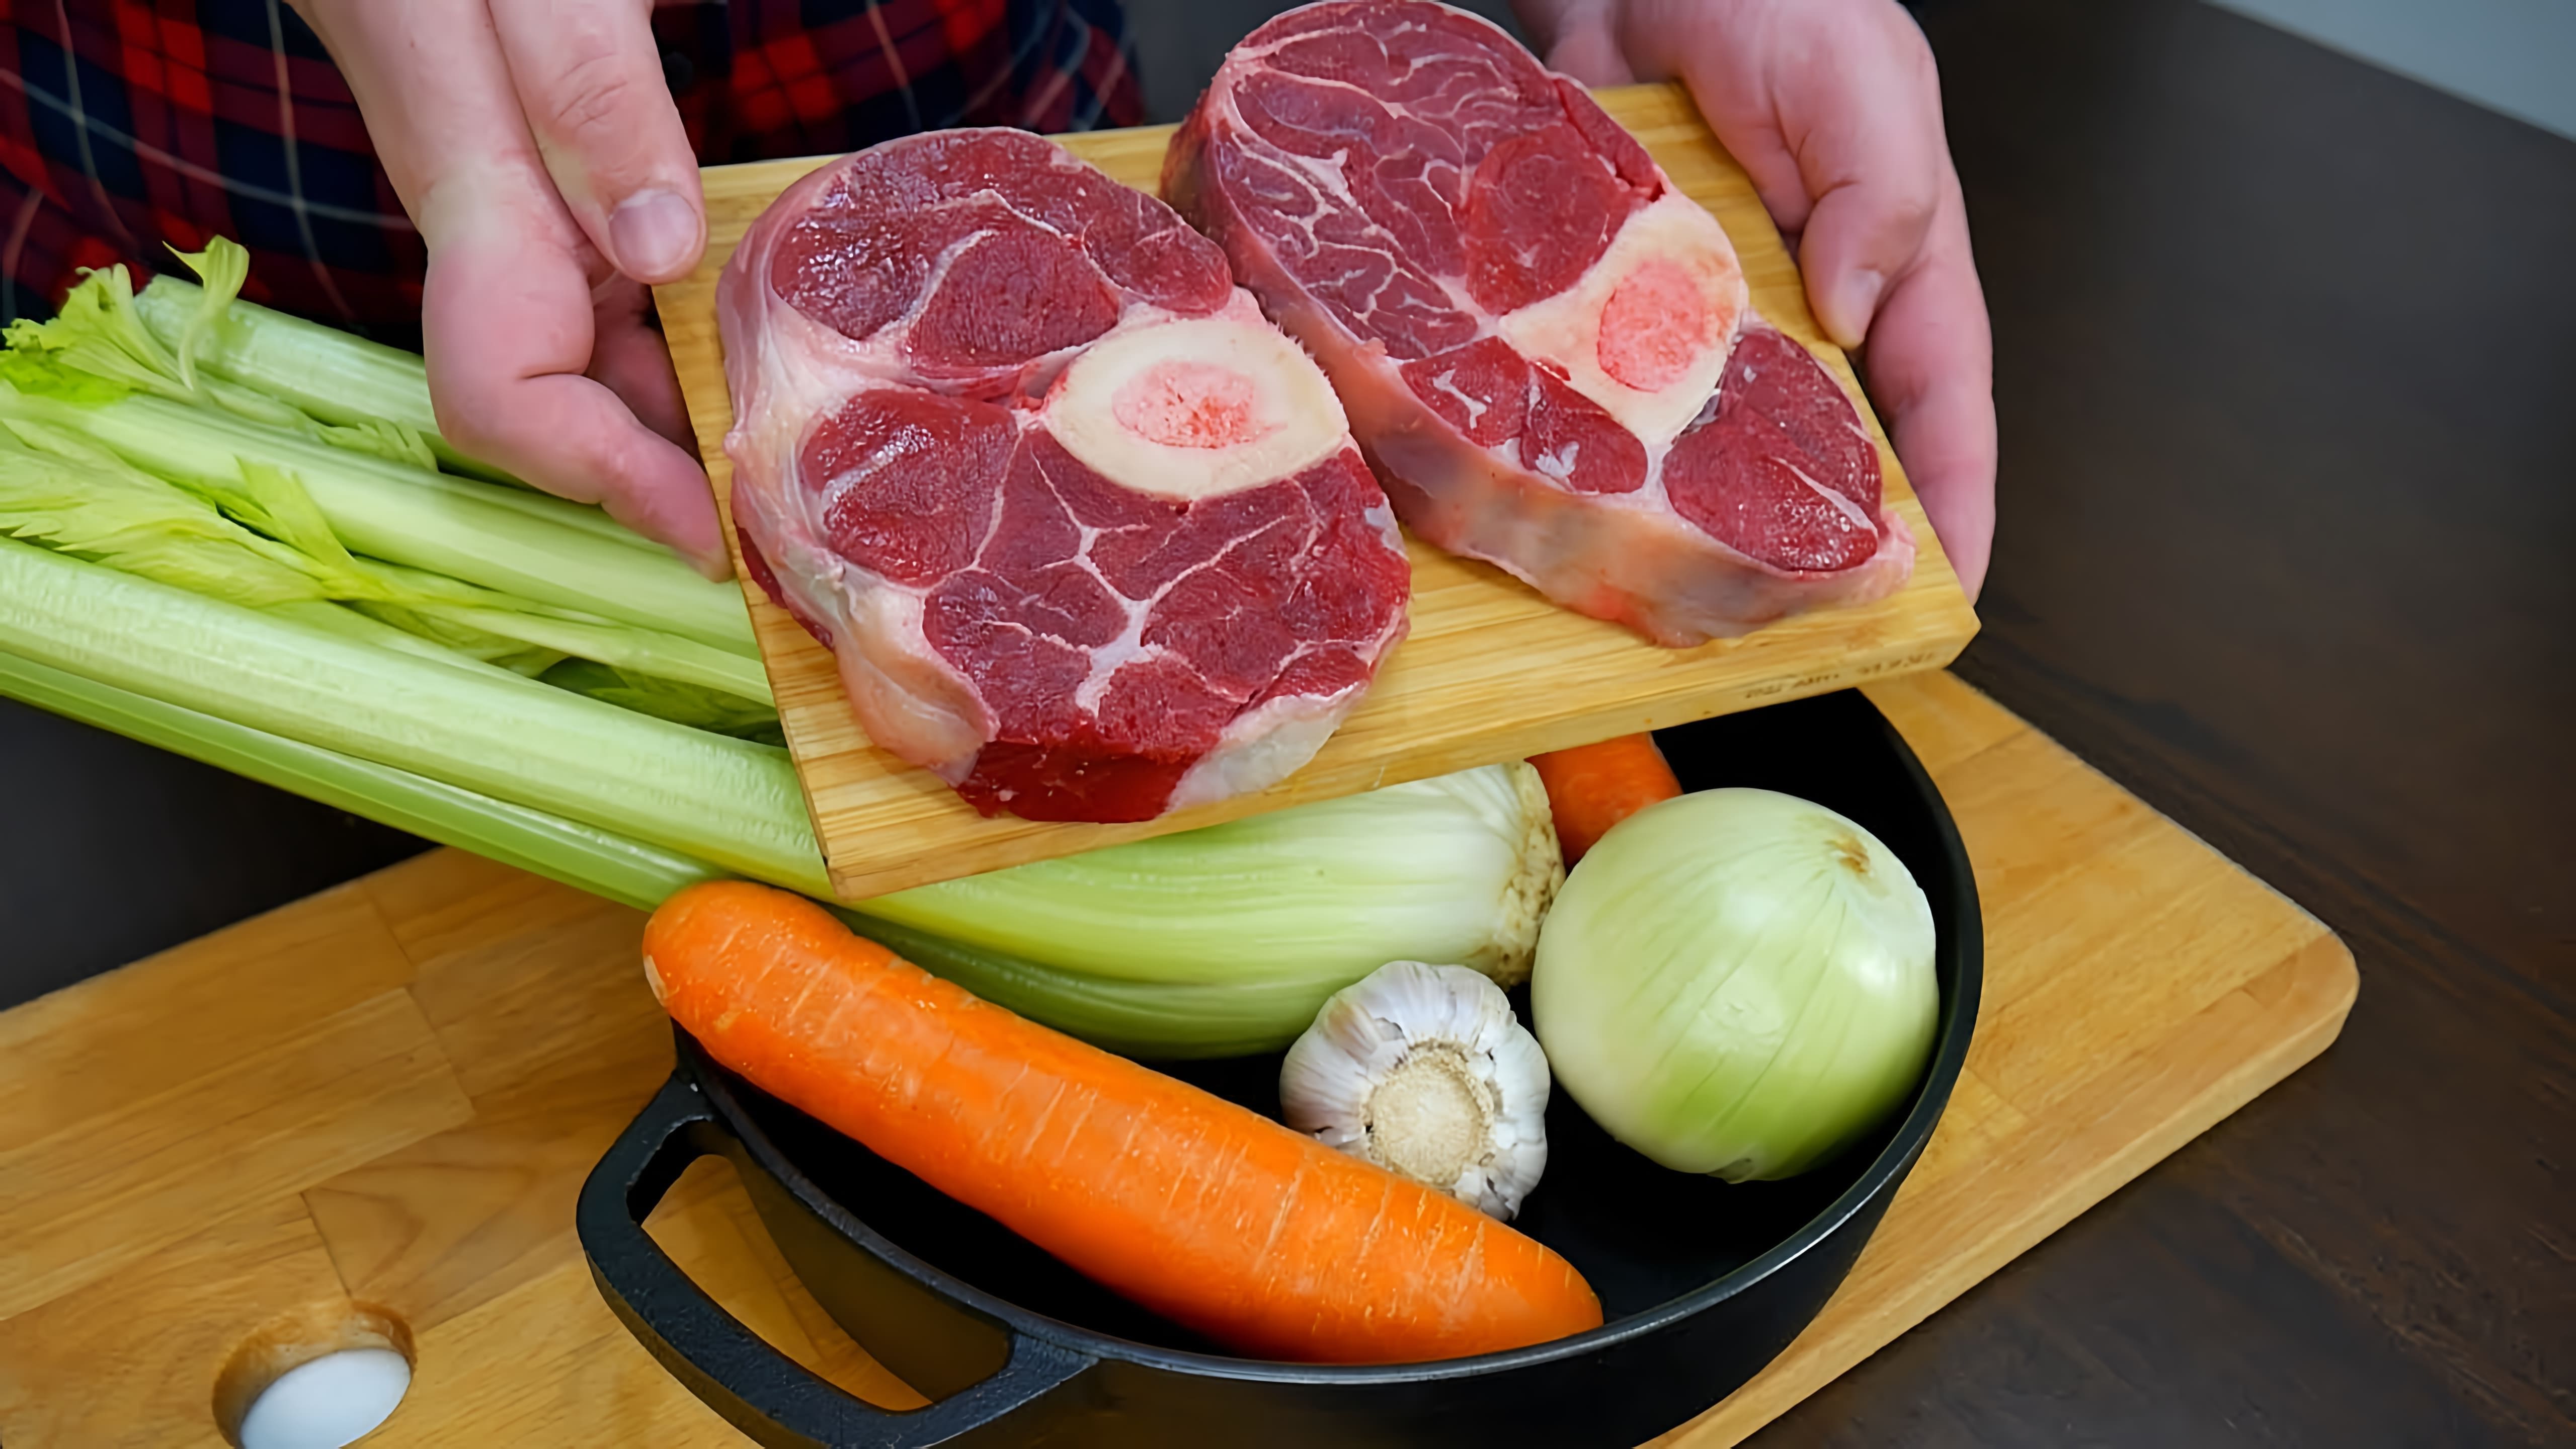 В этом видео демонстрируется рецепт приготовления стейков из говядины, оссобуко